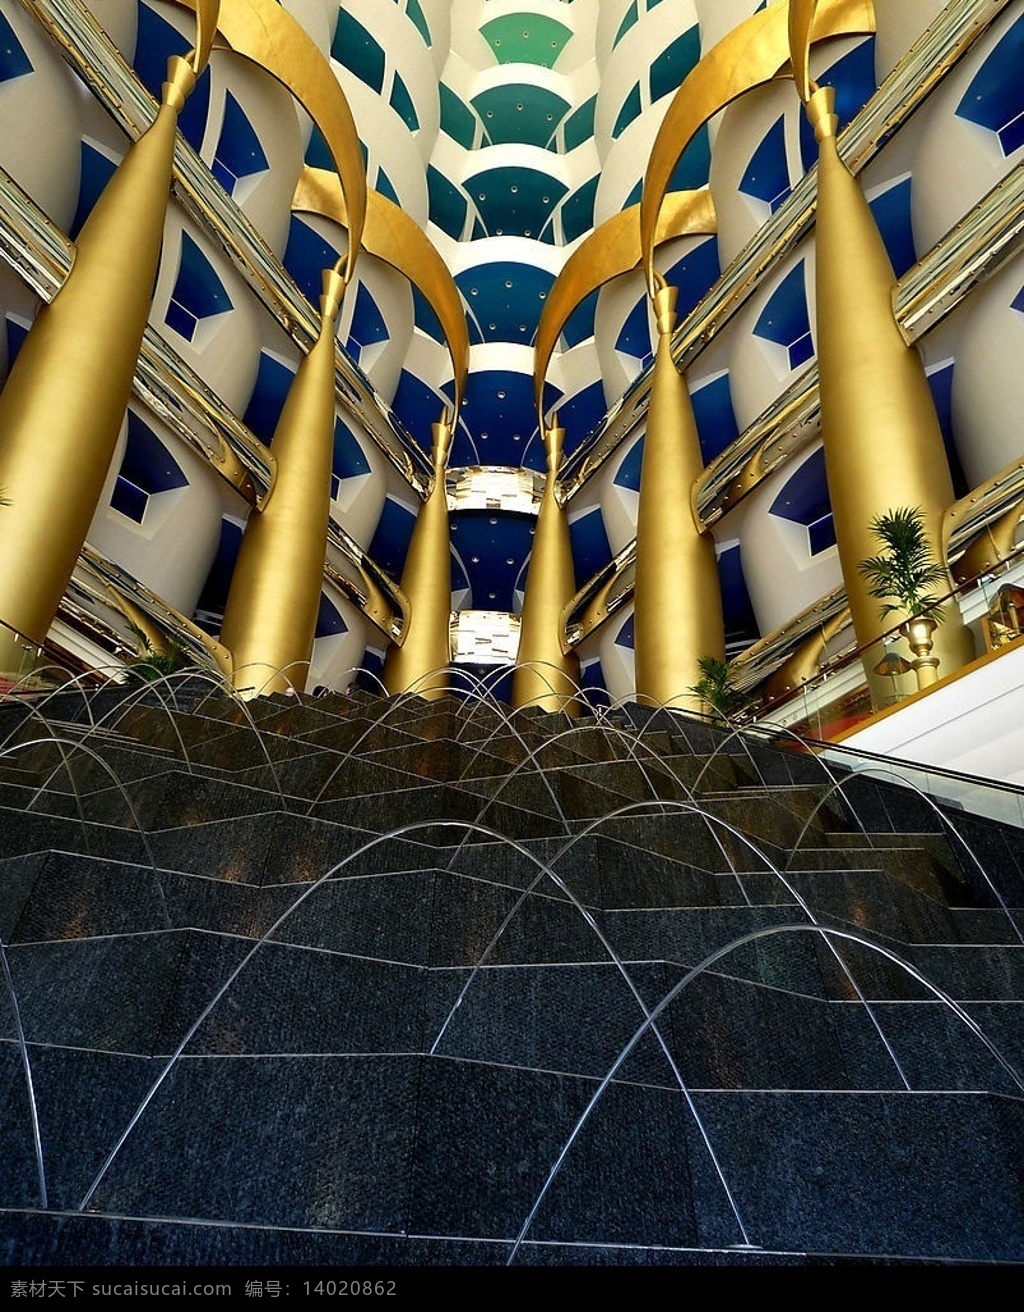 迪拜帆船酒店 帆船洒店 七星级洒店 星级洒店 建筑园林 室内摄影 摄影图库